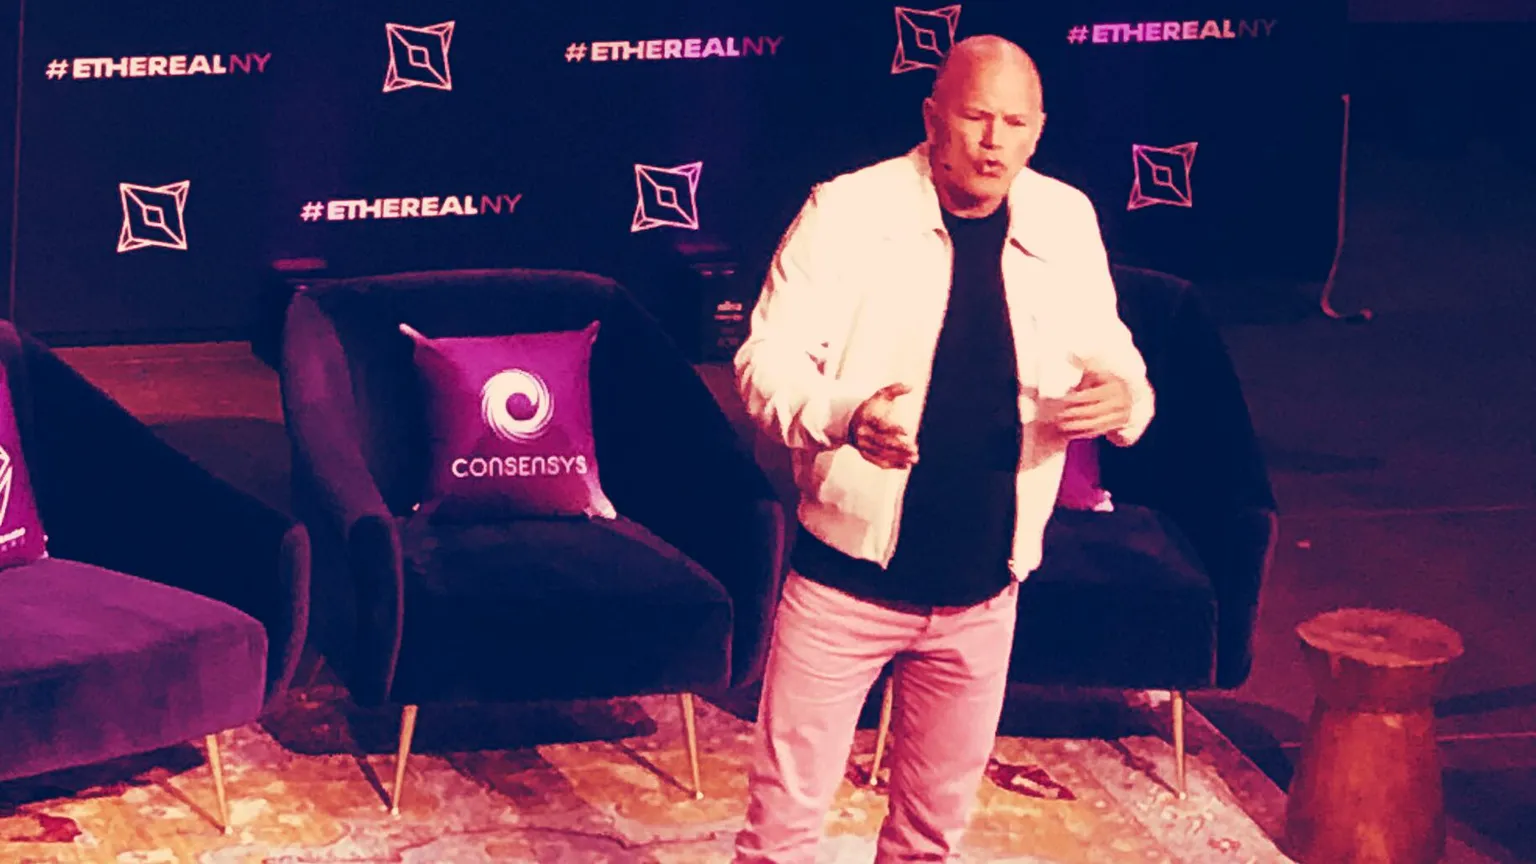 El CEO de Galaxy Digital Mike Novogratz hablando en Ethereal en 2019. Imagen: Descifrar.